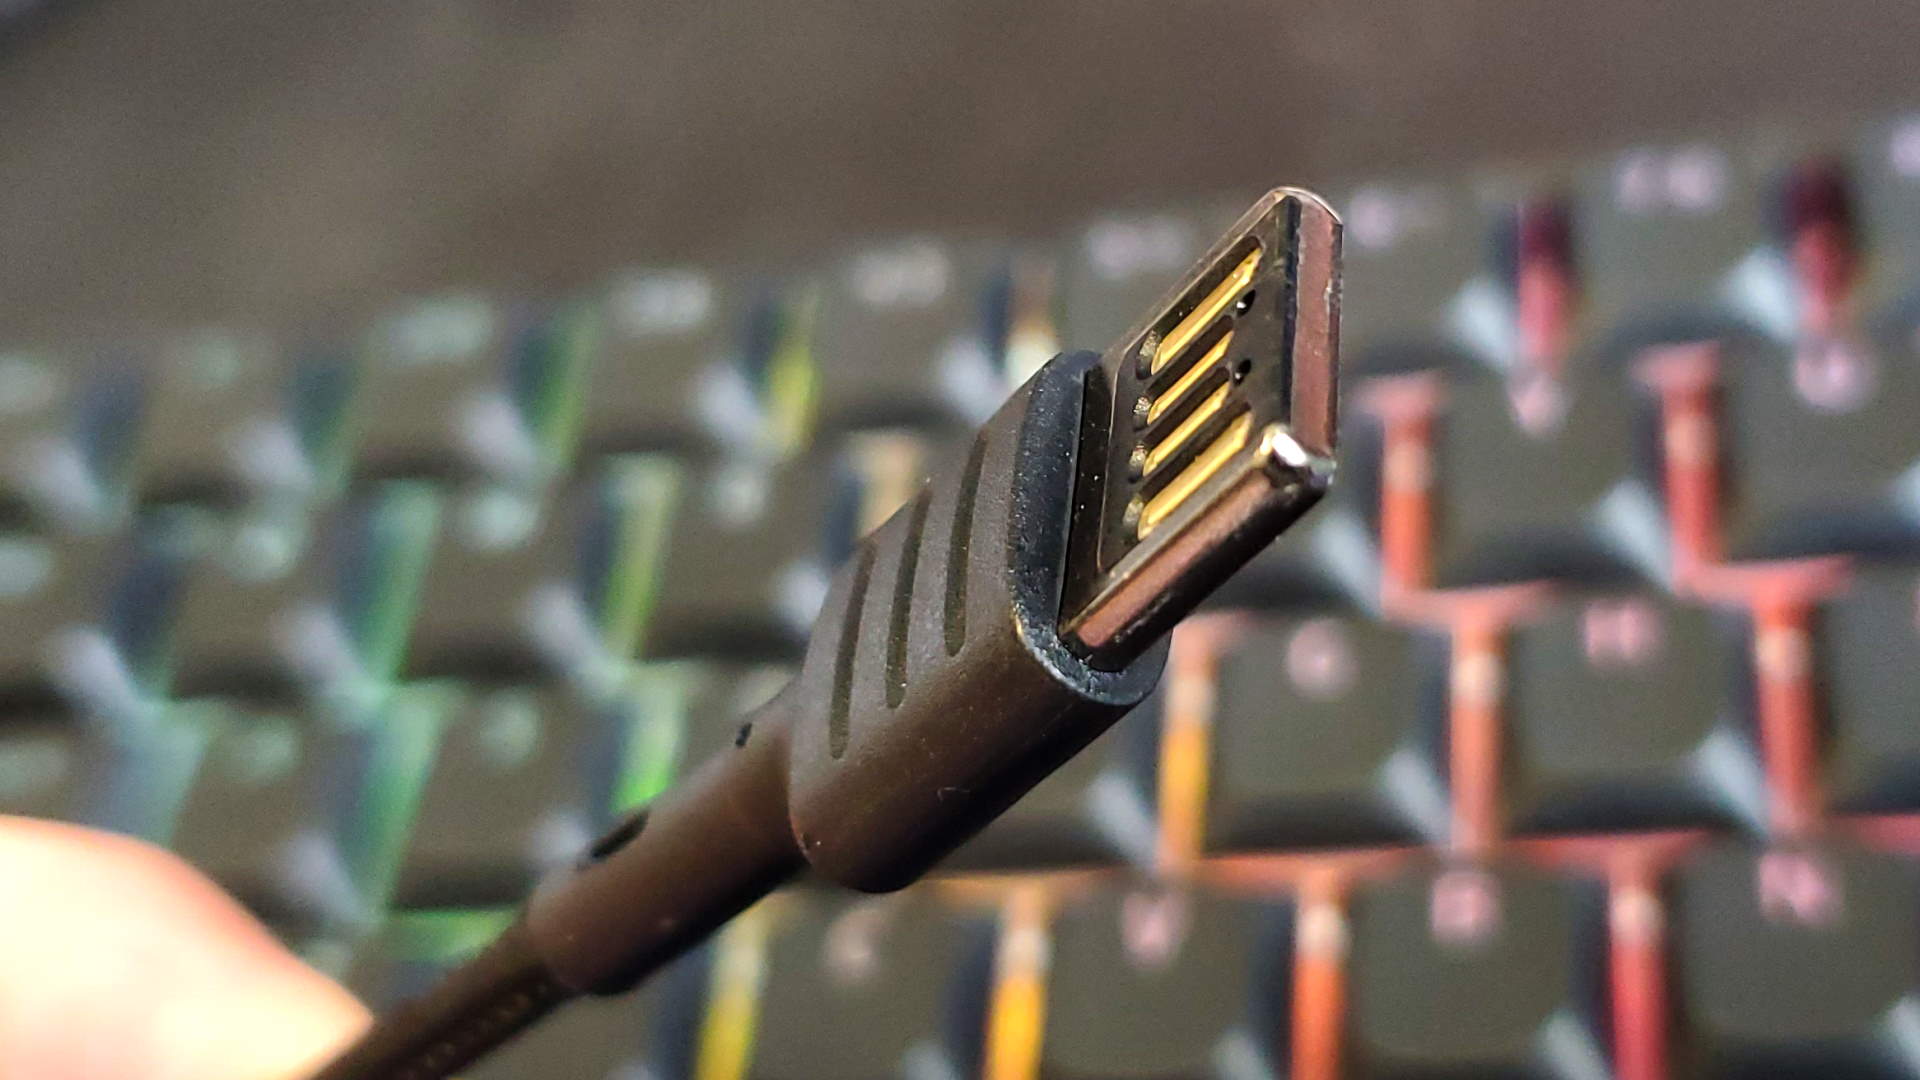 Bana baştan beri ters çevrilebilir USB kablolarımız olabileceğini mi söylüyorsun?